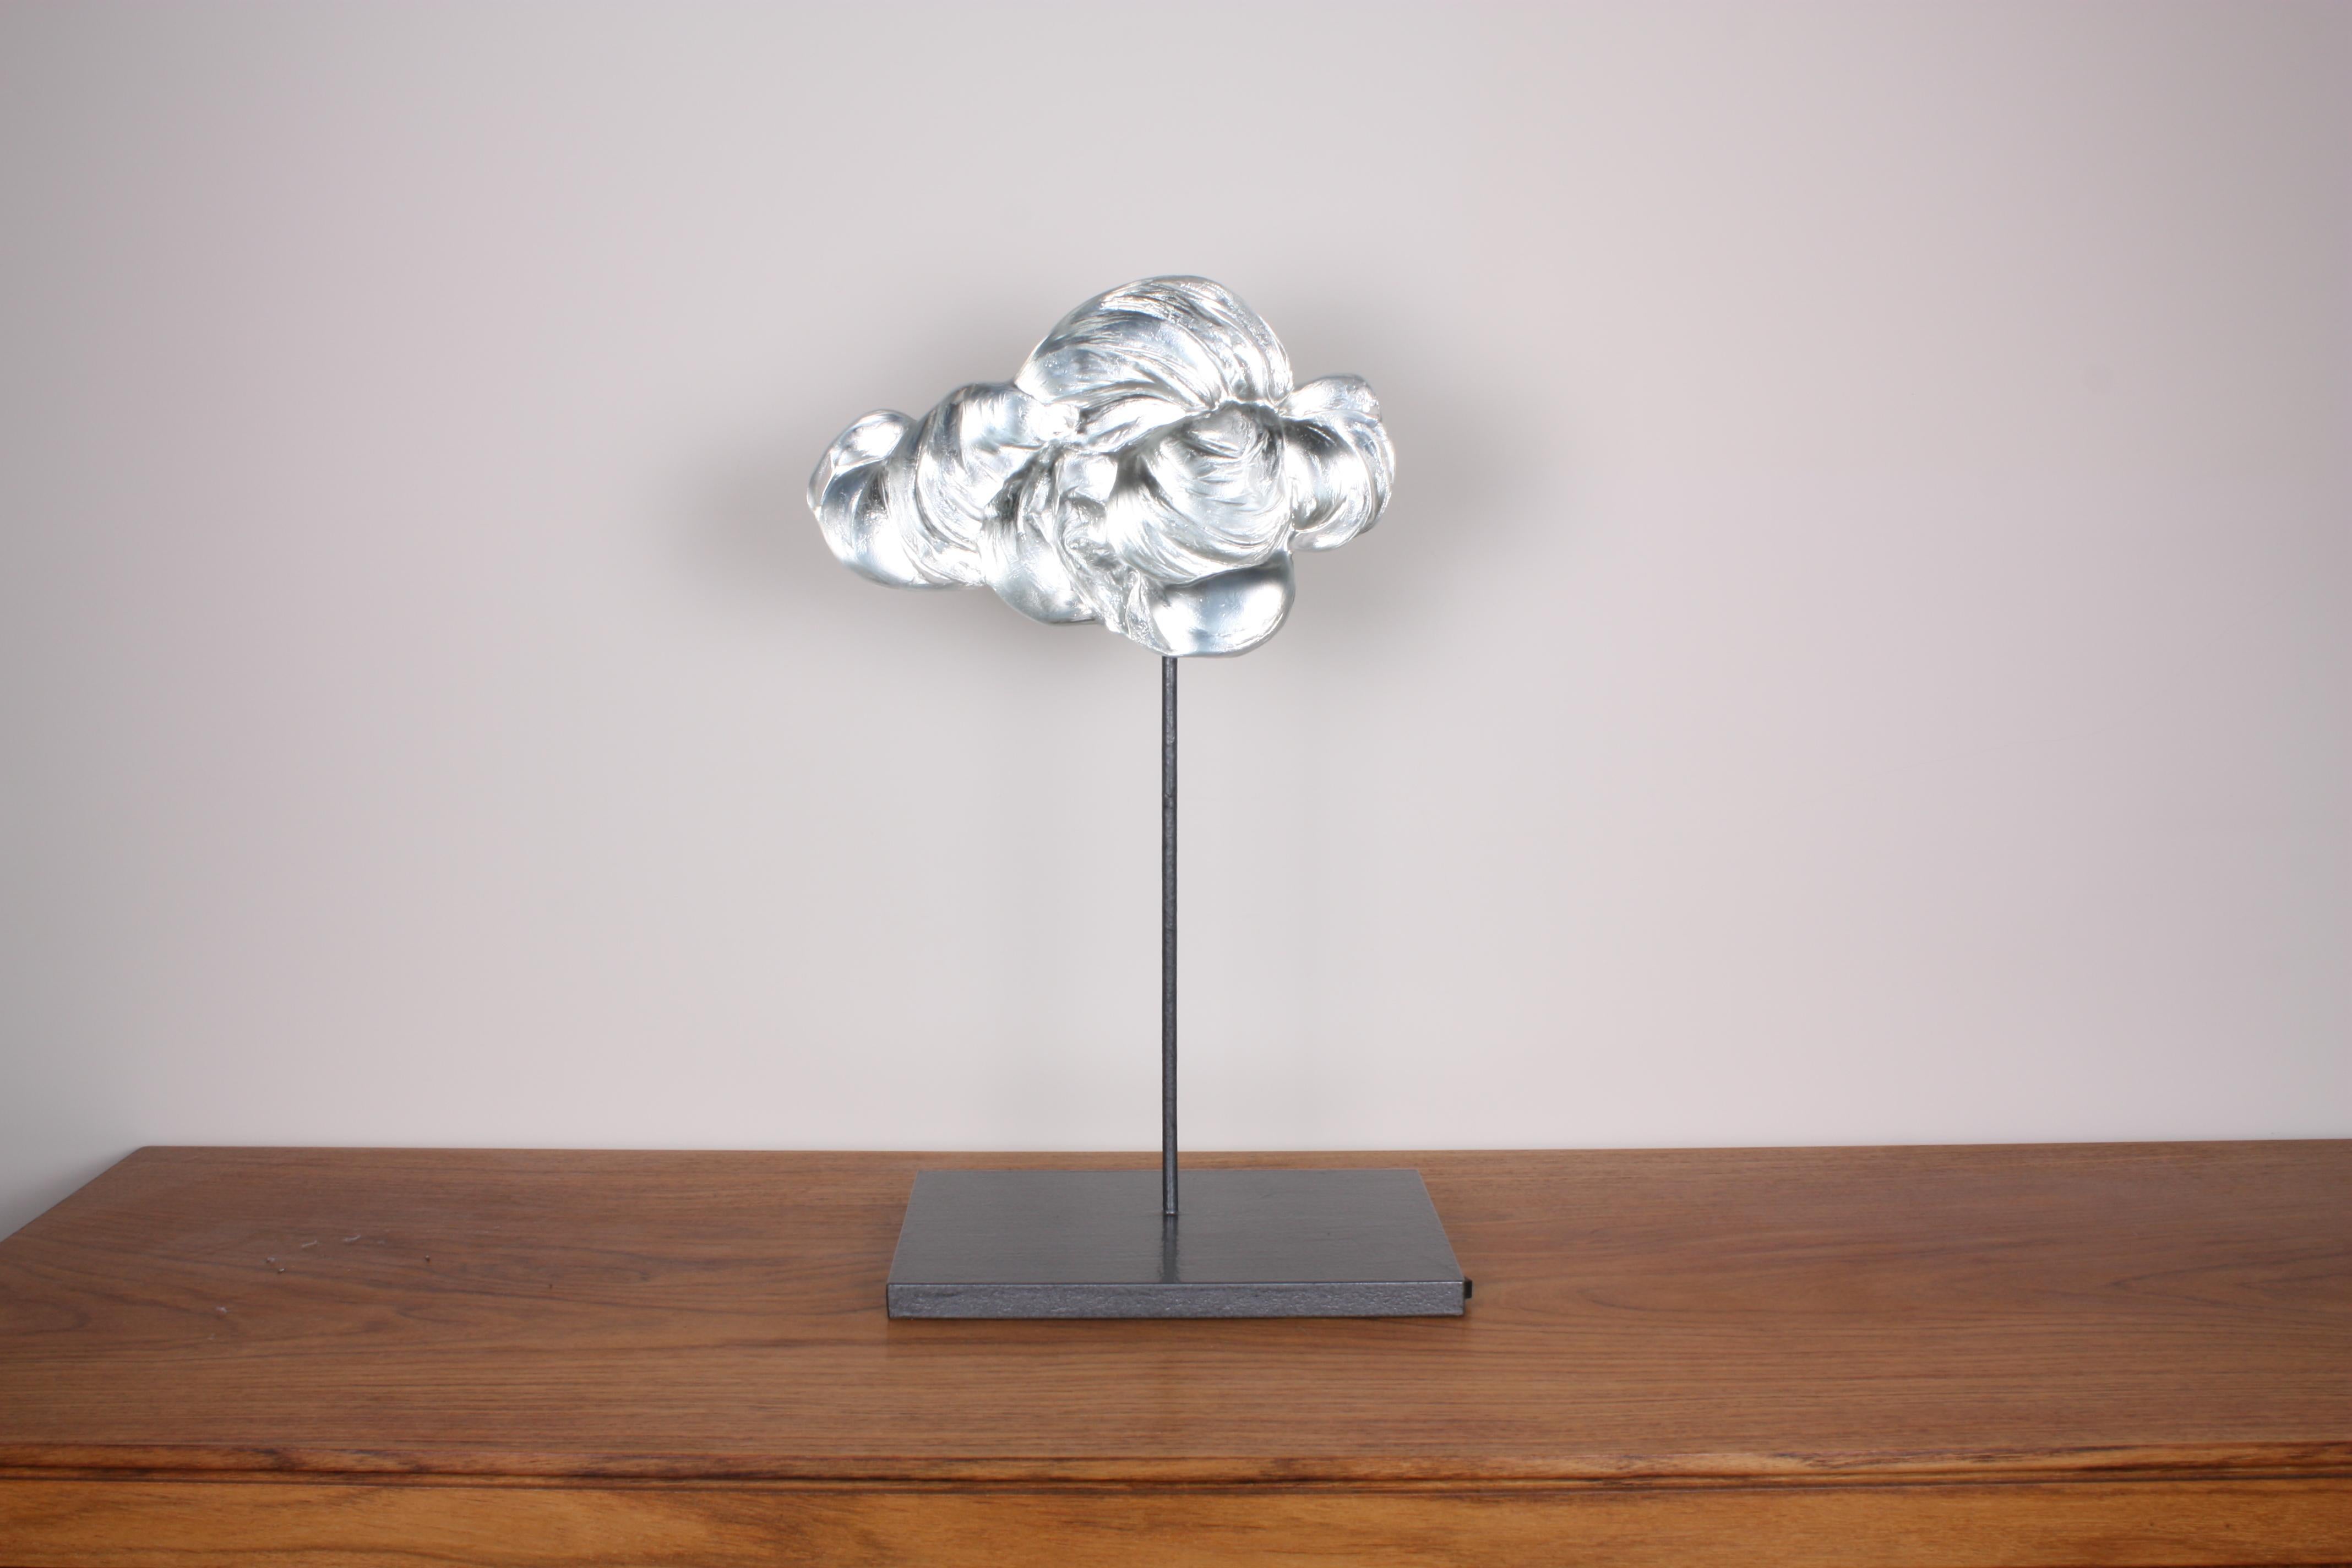 glass cloud sculpture for sale